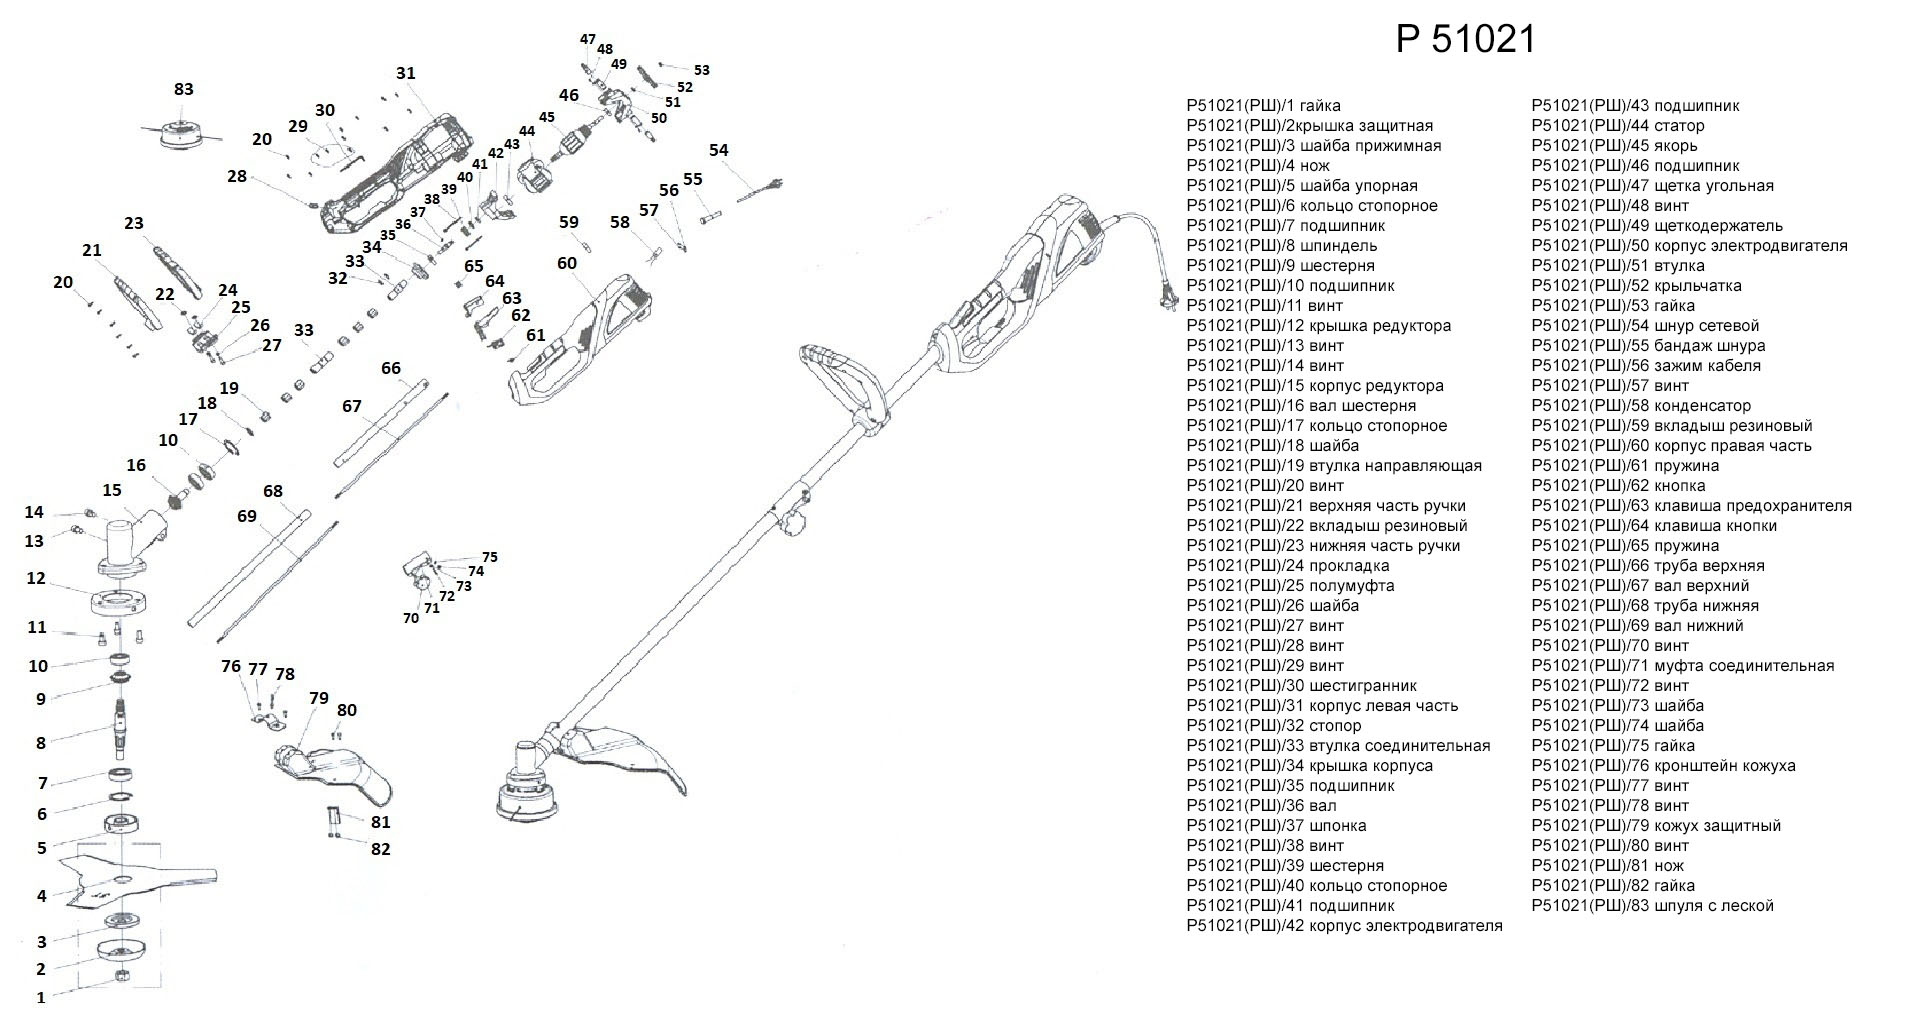 Запчасти, схема и деталировка Электротриммер P51021 (РШ)